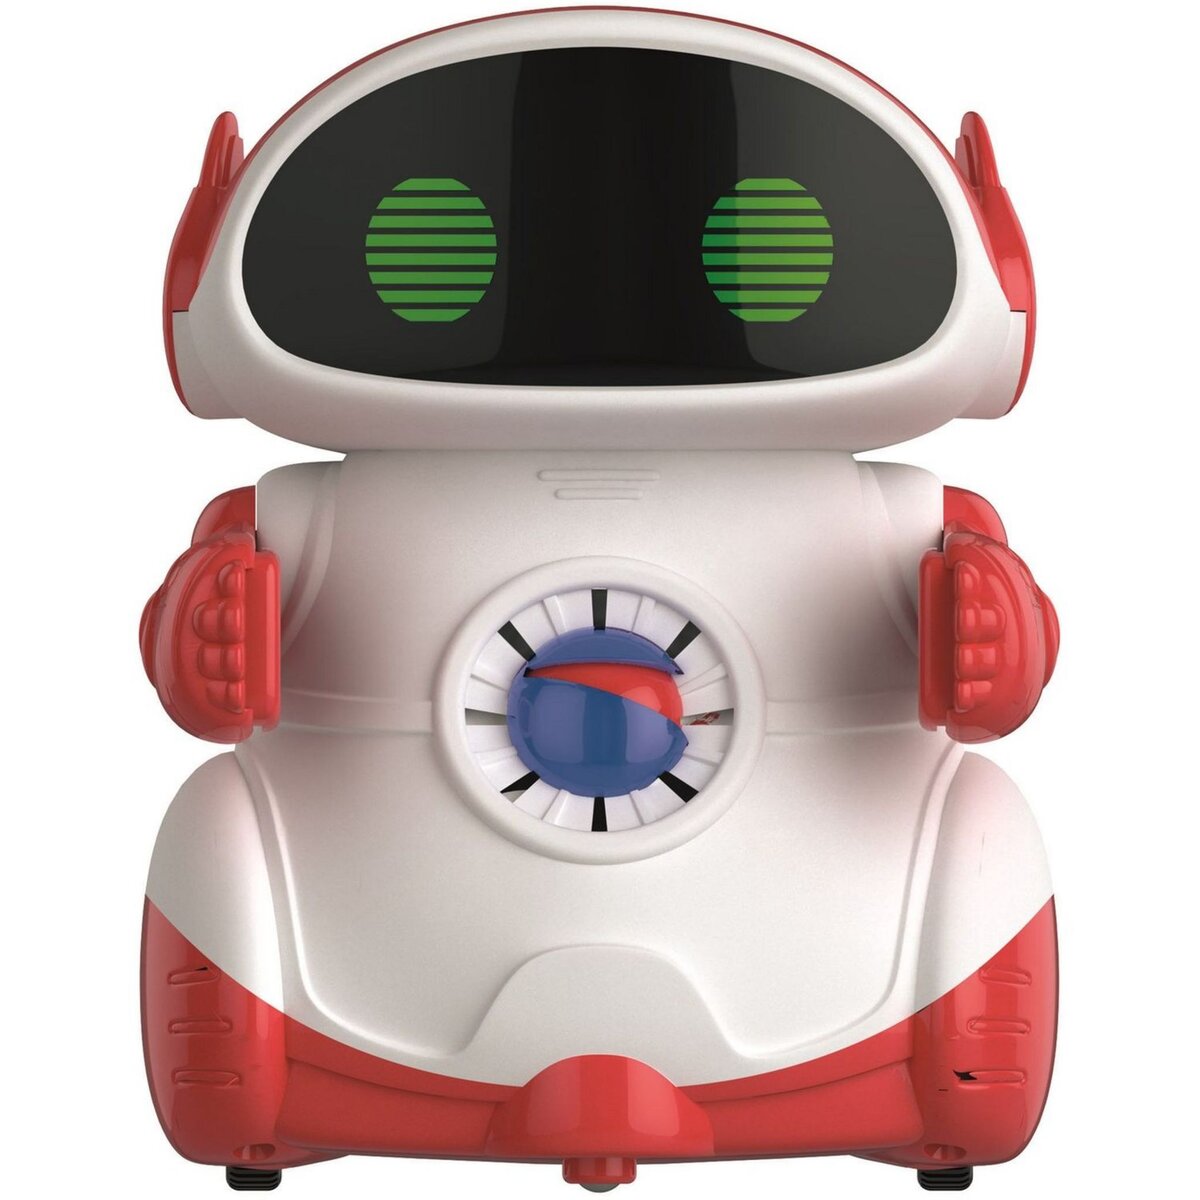 CLEMENTONI Super doc robot éducatif parlant